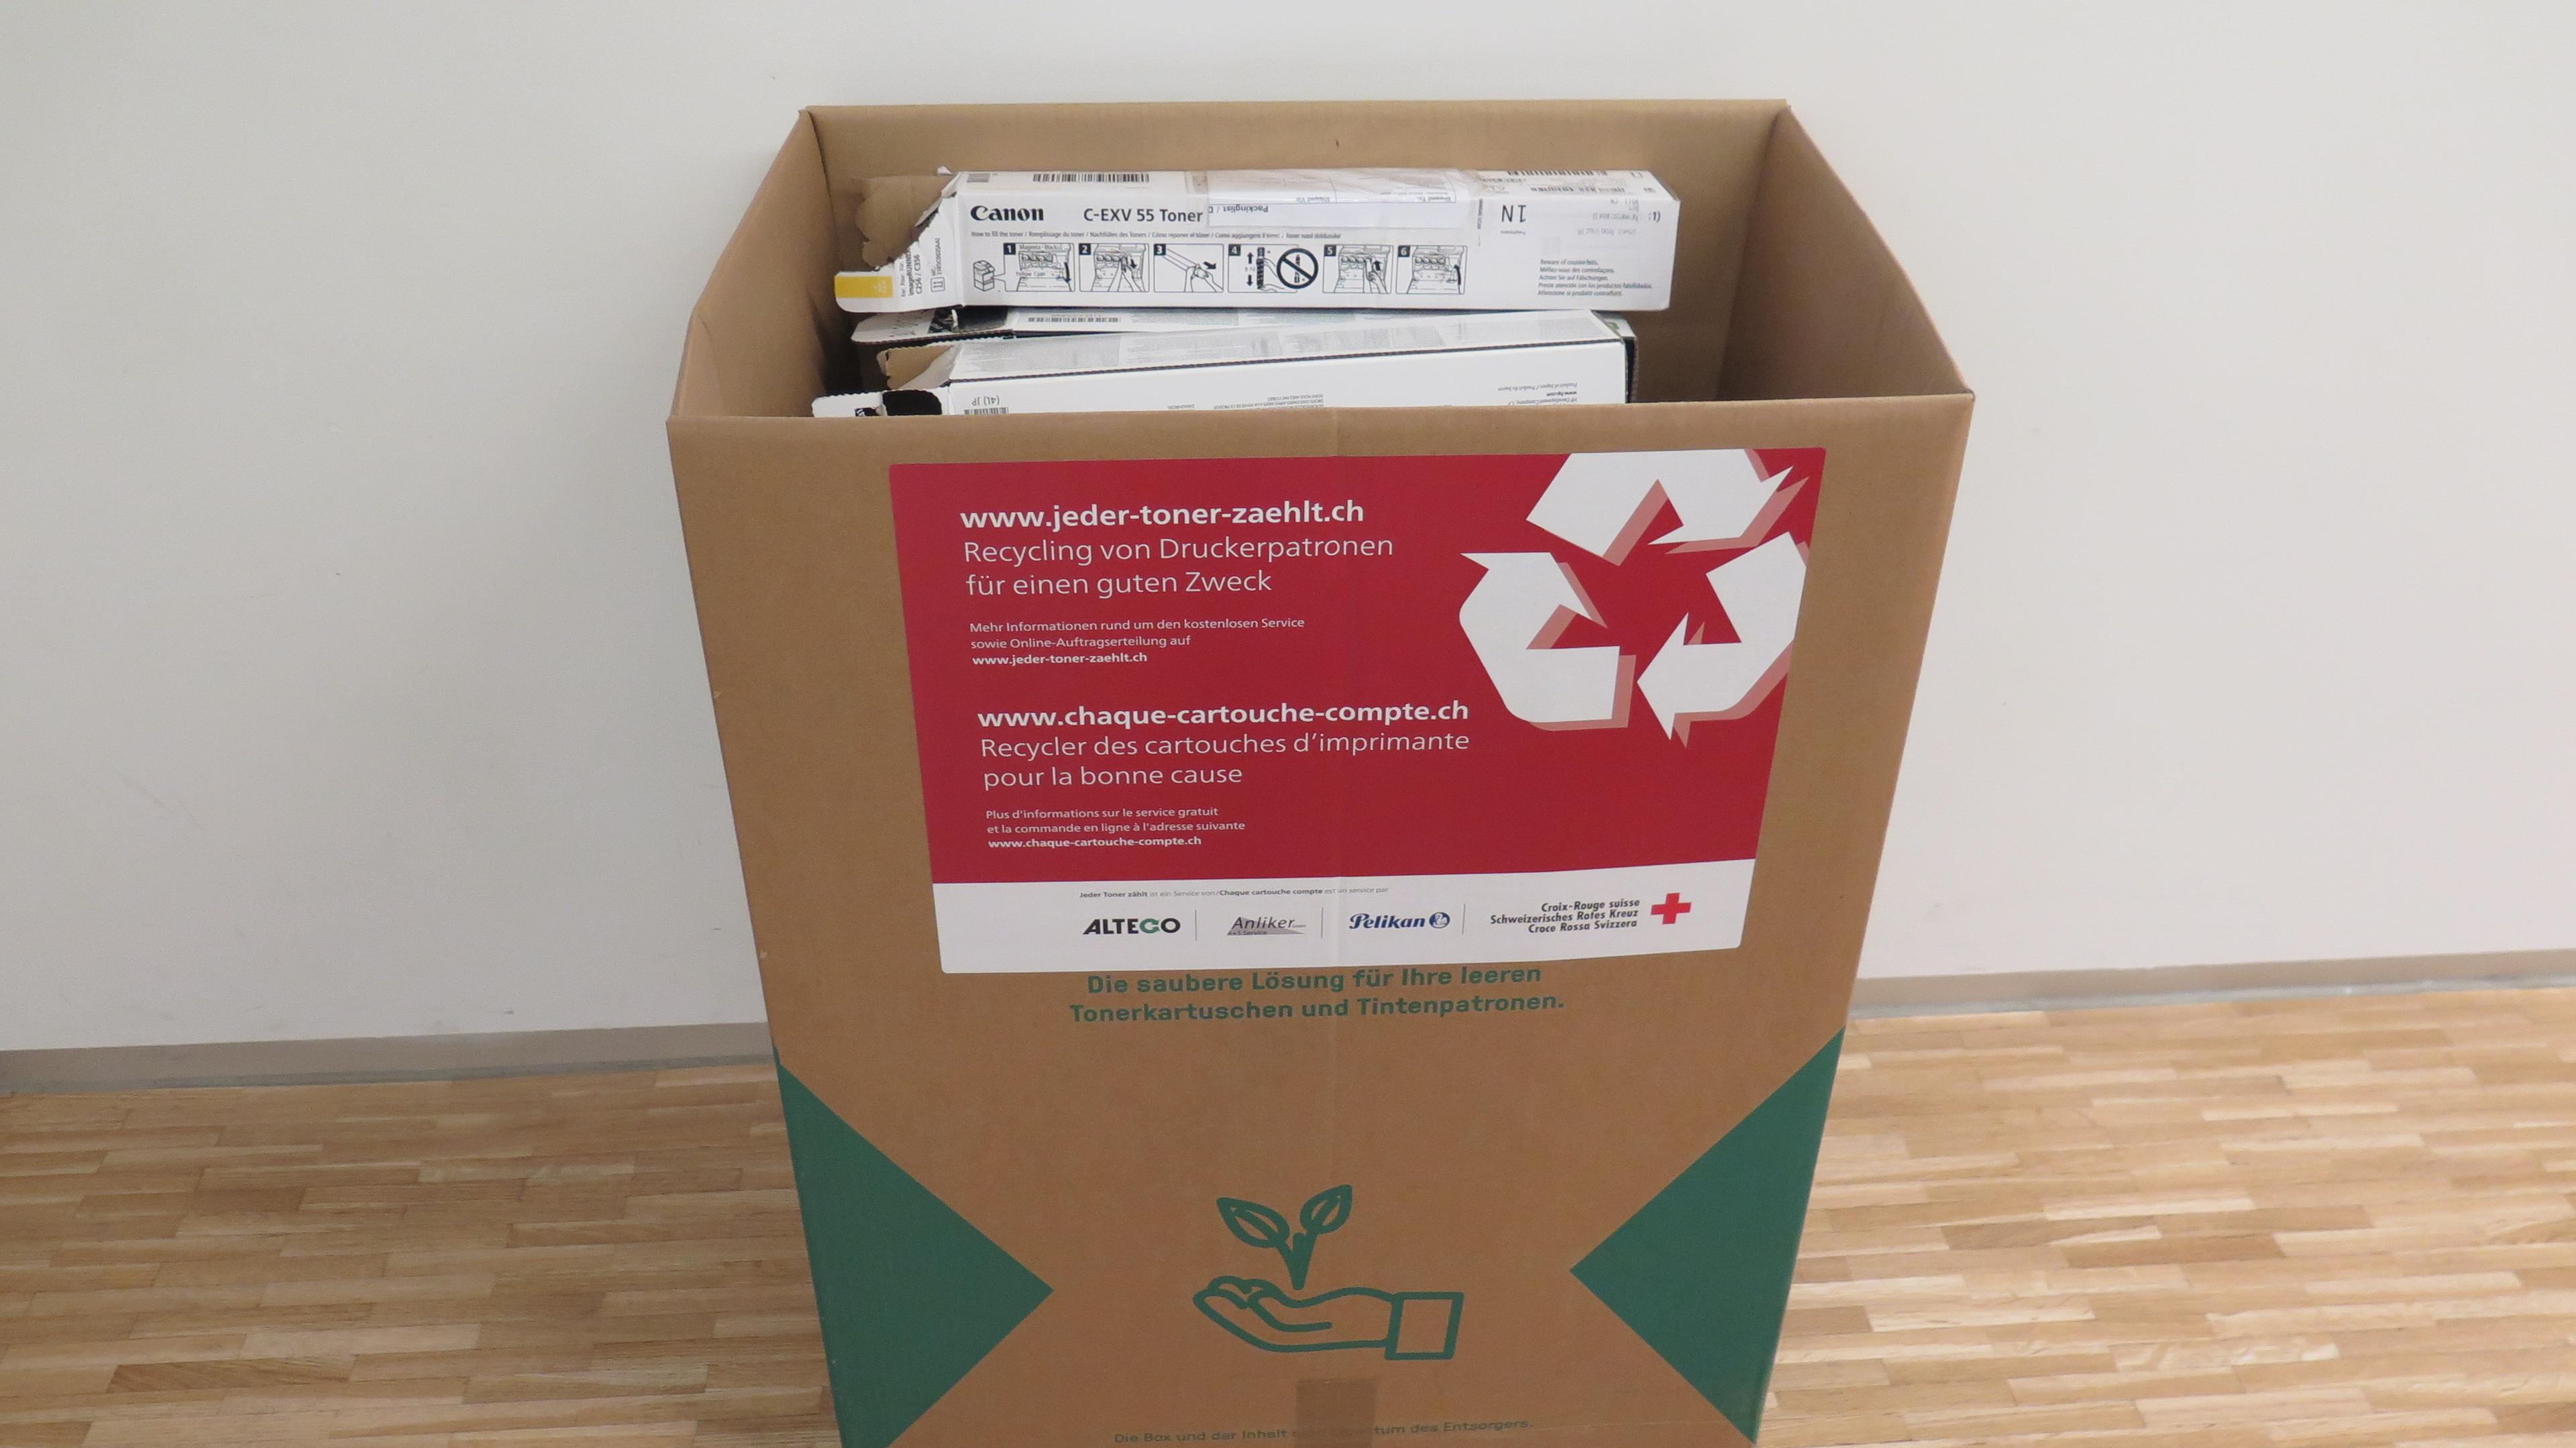 Sammelbox aus Karton für die Aktion ‘Jeder Toner zählt’ mit aufgedruckten Informationen zur Aktion